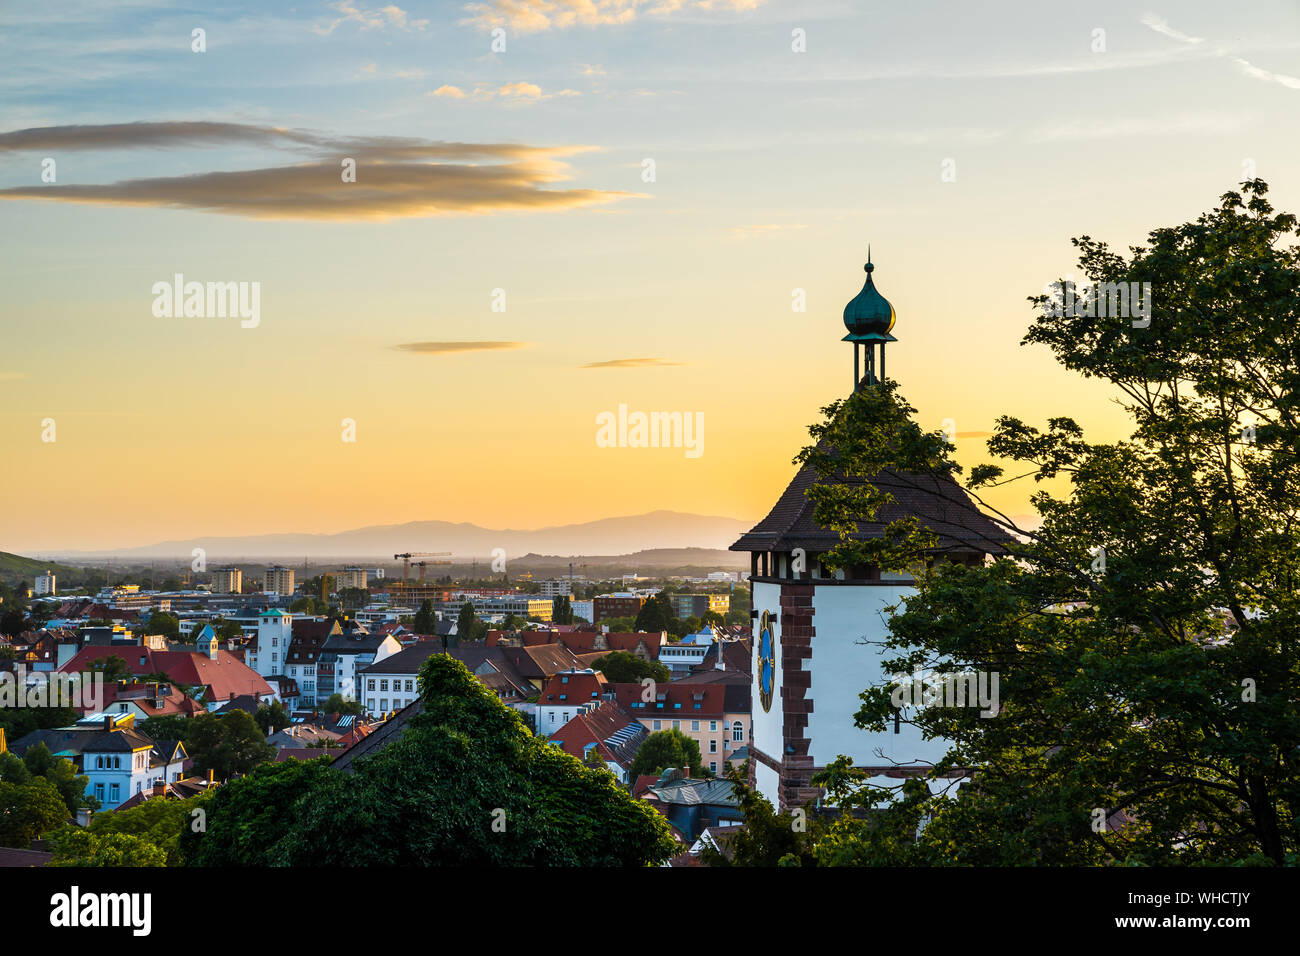 Germania, vista sopra i tetti della città di Freiburg im Breisgau sopra schwabentor, svevo town gate in caldo arancio luce del tramonto in vacanza estiva tim Foto Stock